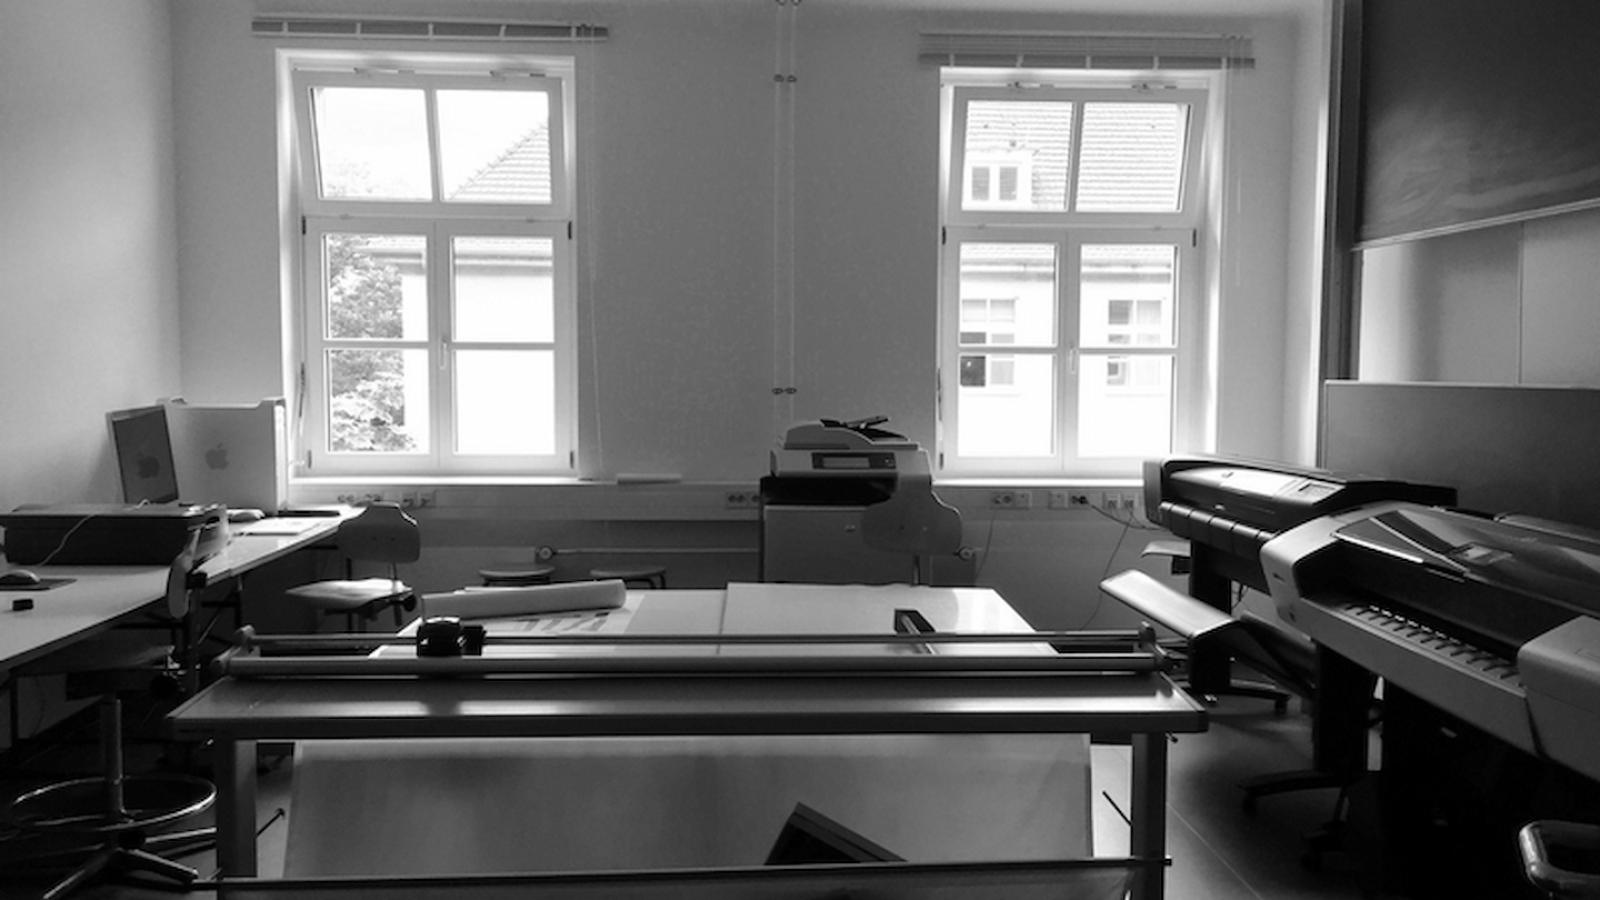 Ansicht der Werkstatt Plotterraum in Schwarz-Weiß